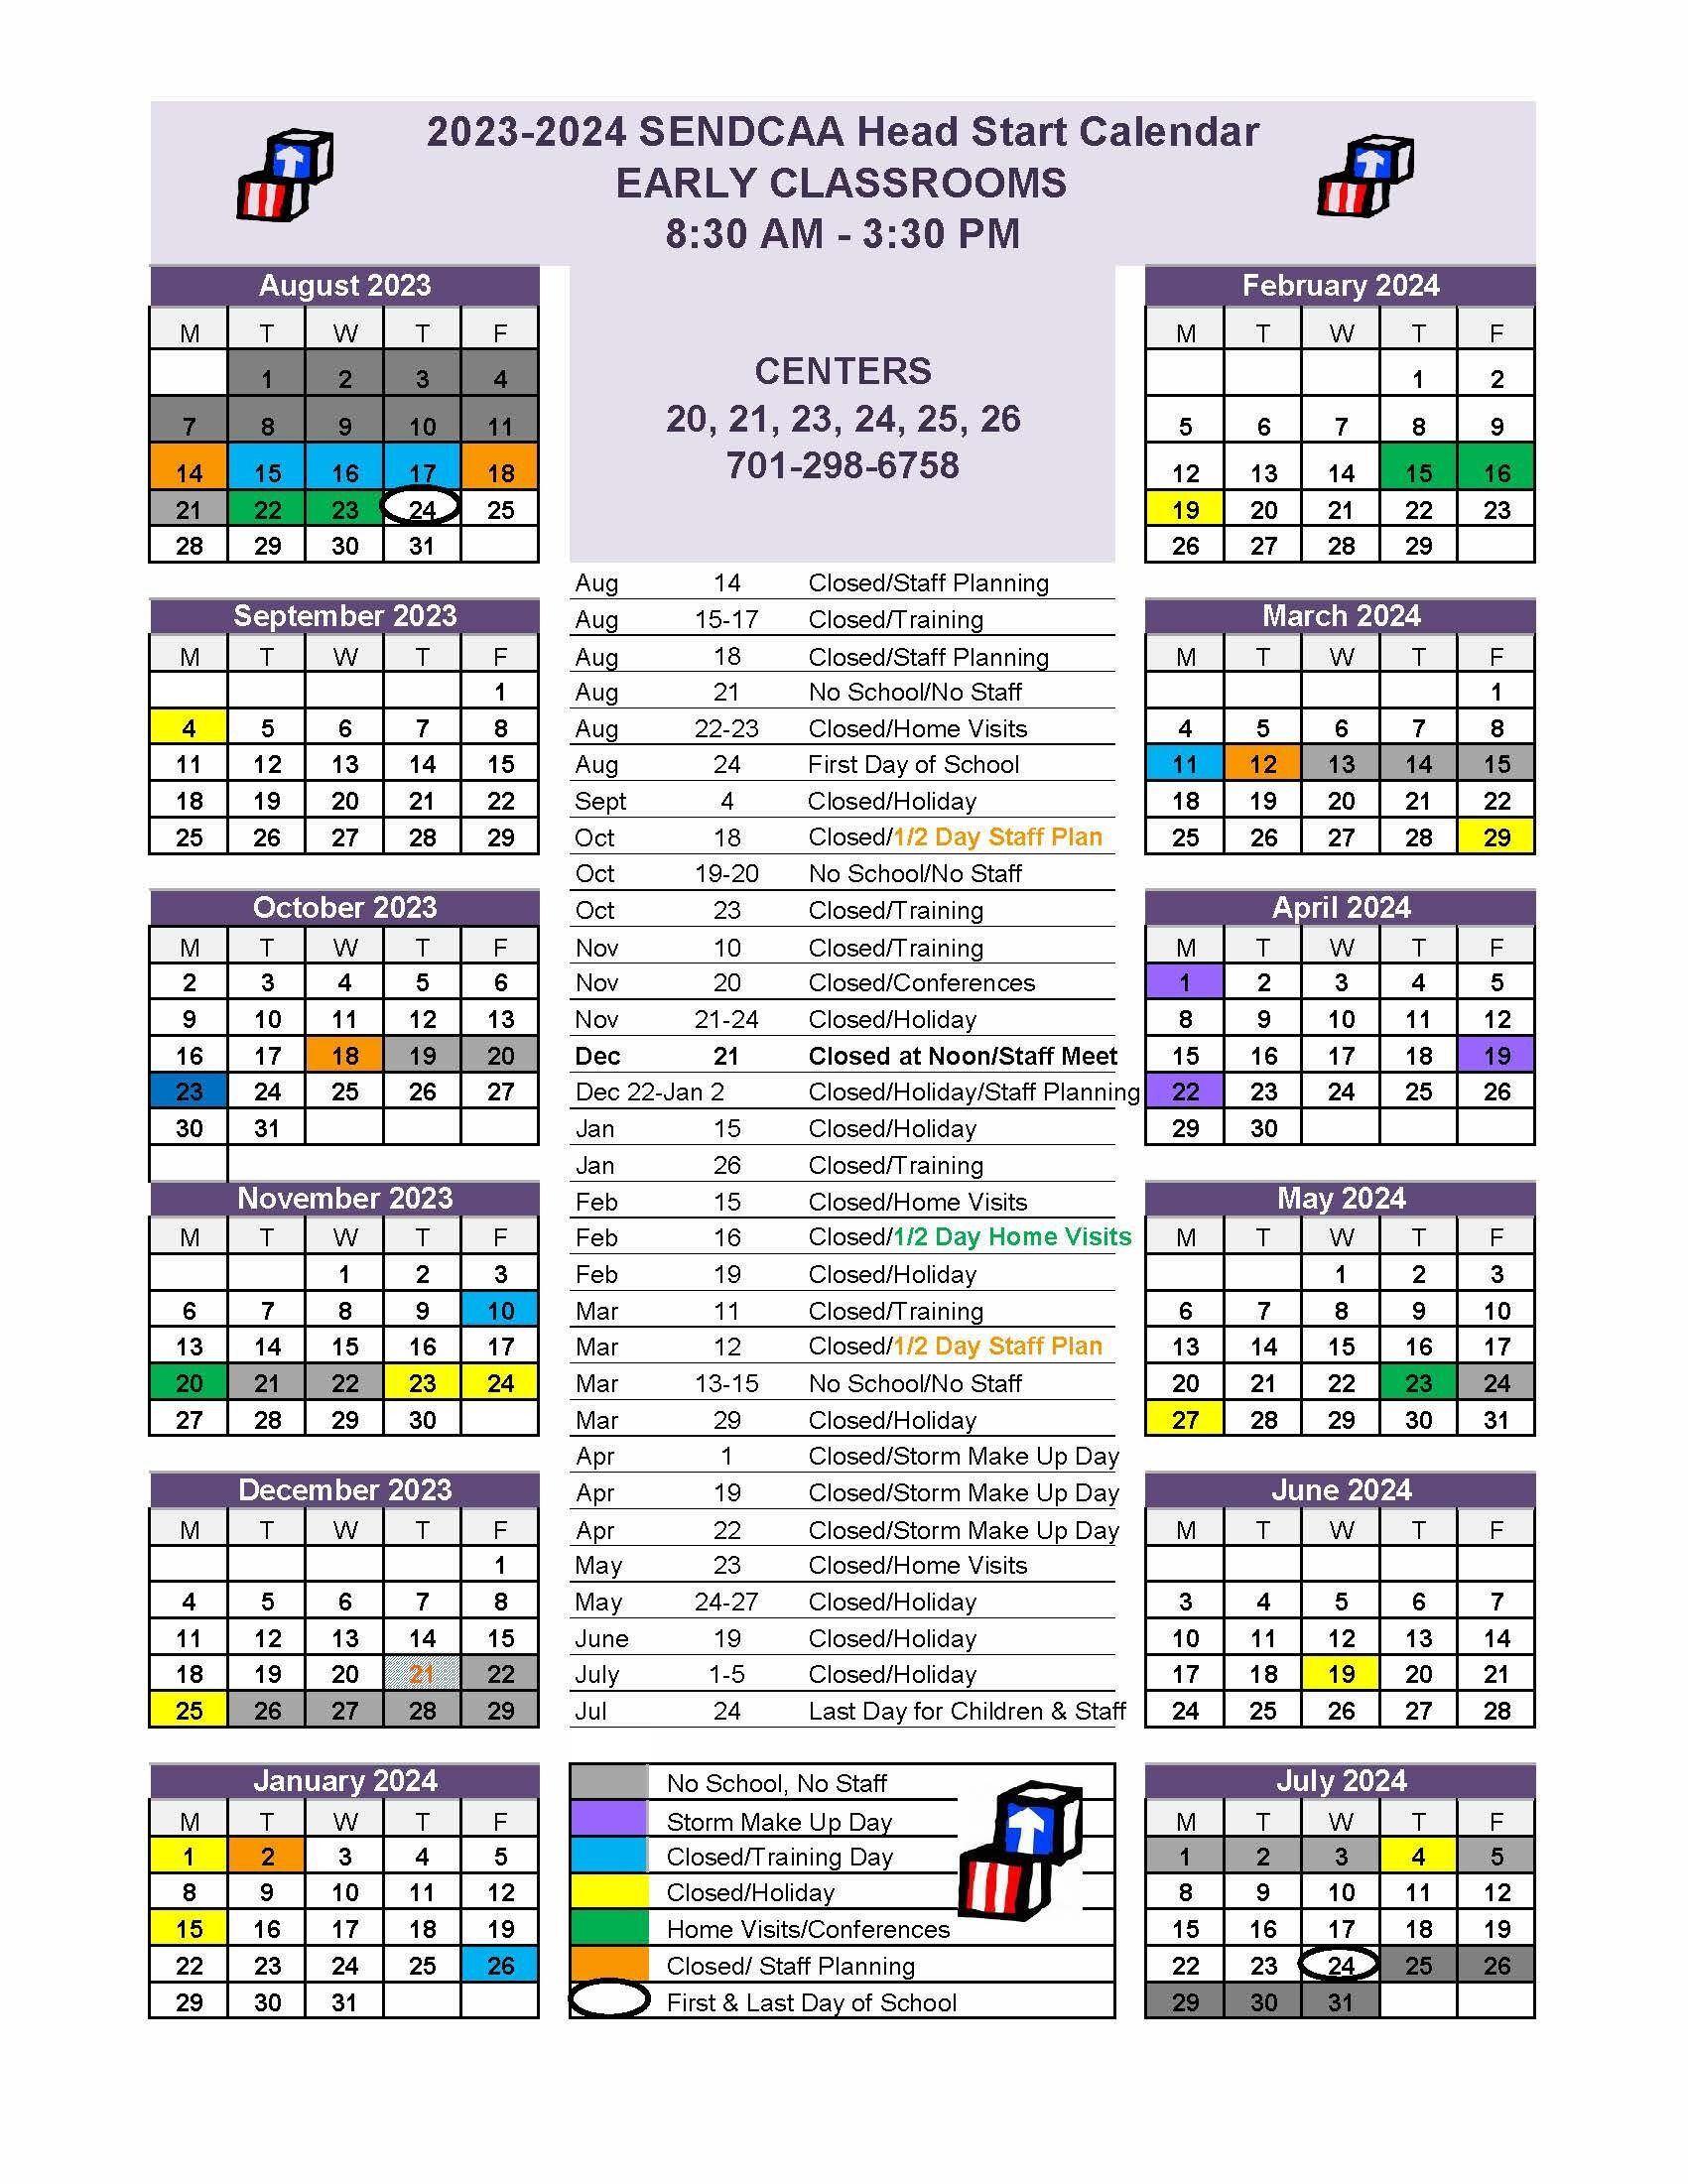 2023-2024 Fargo Early Calendar